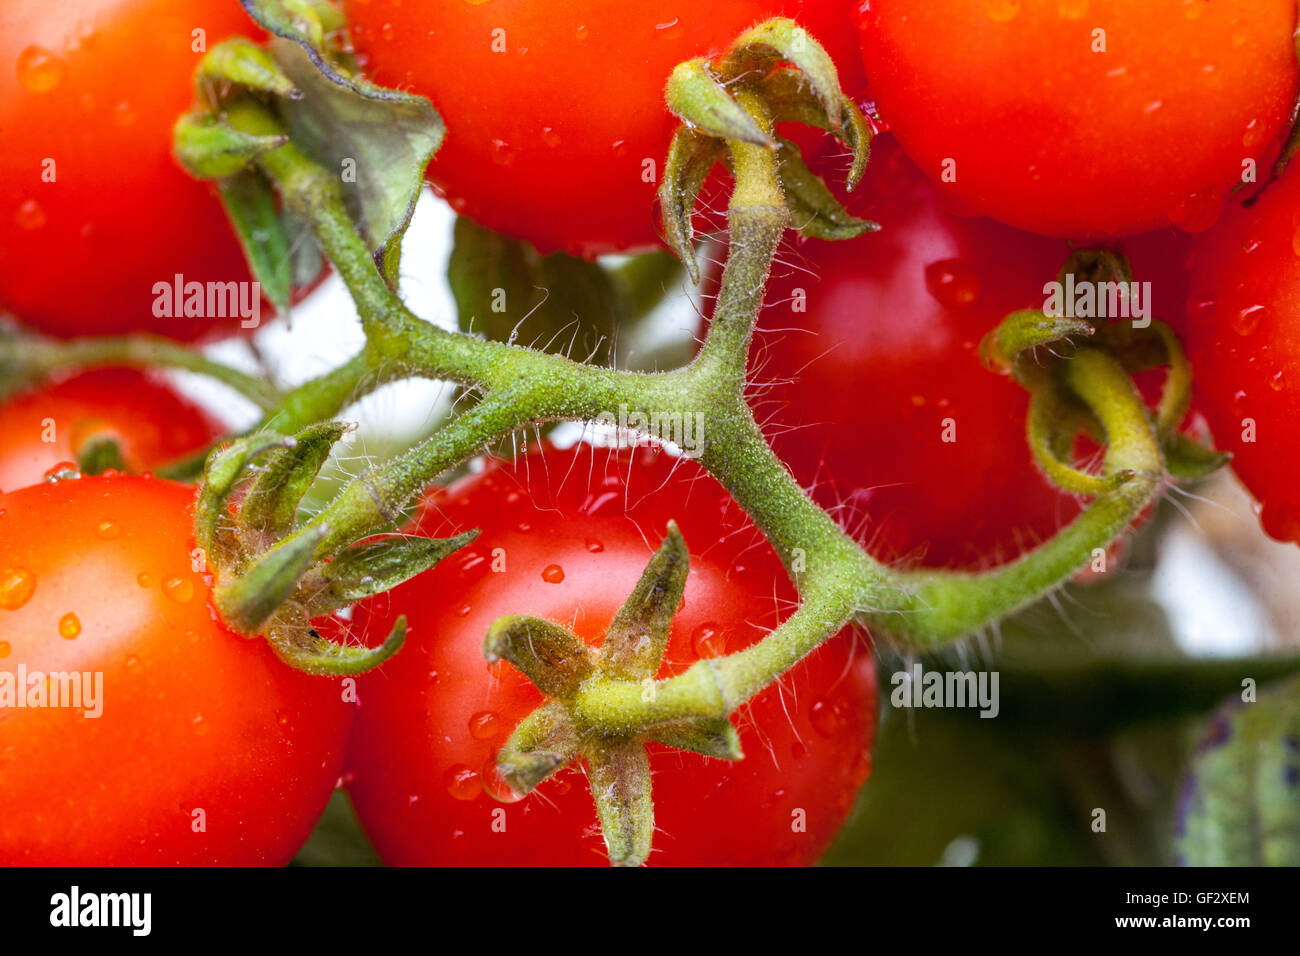 Tomates cerises vigne gros plan Solanum lycopersicum fruits juteux Banque D'Images